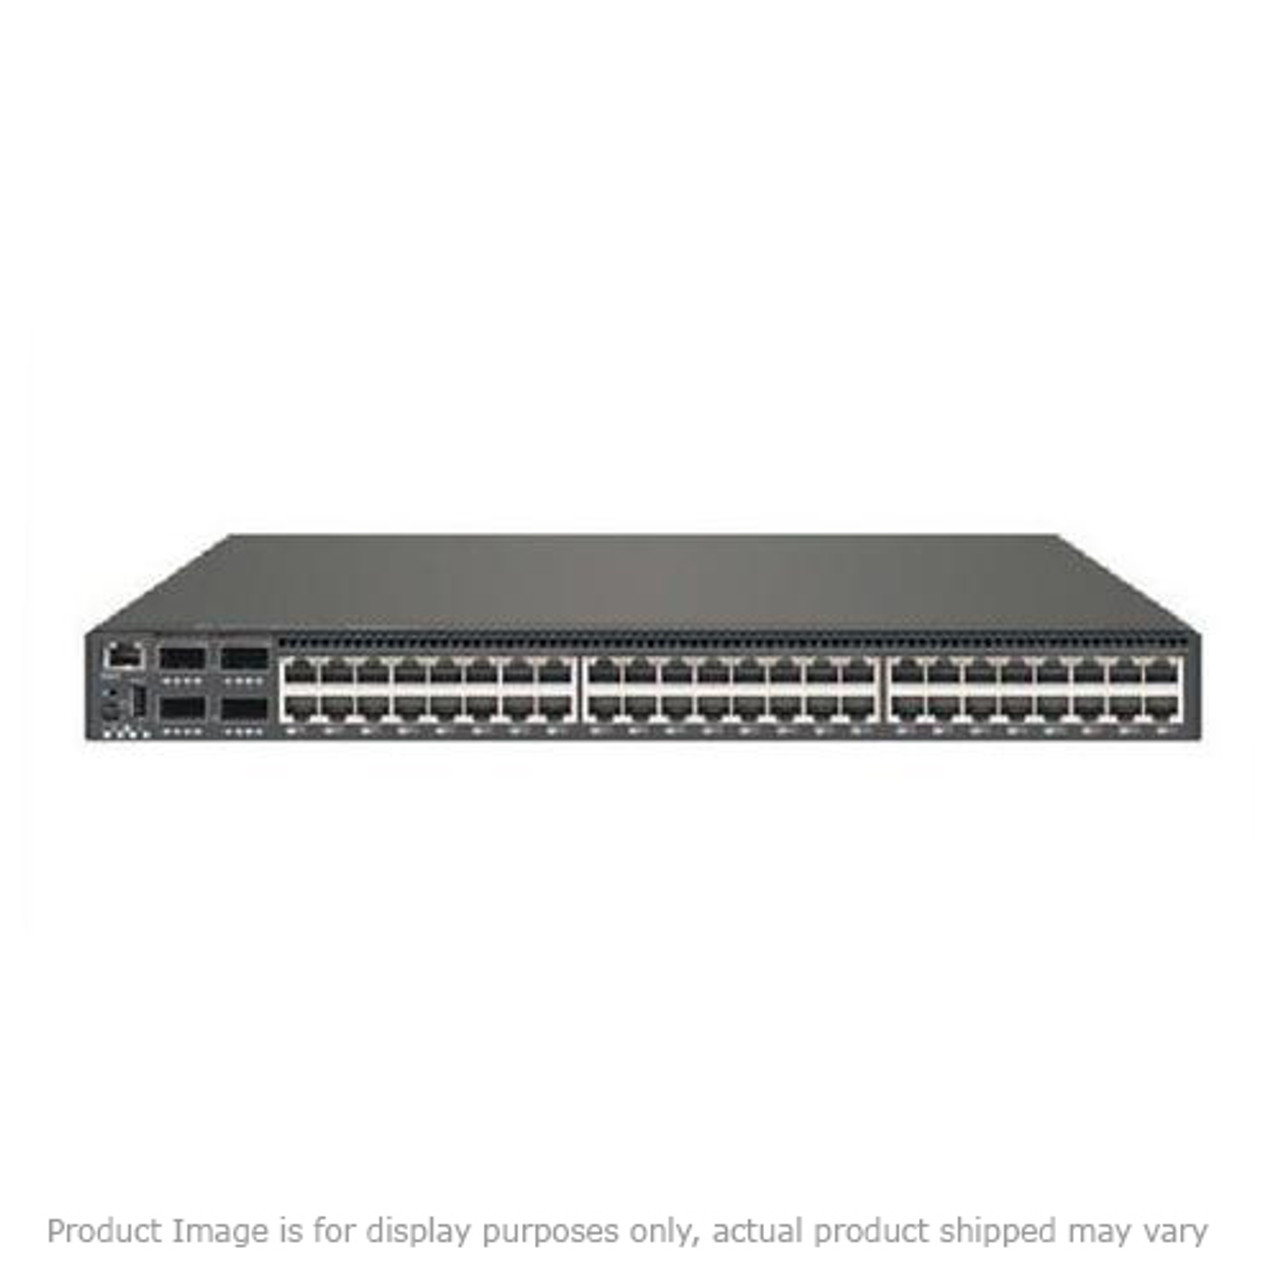 02L0876 IBM 12 Port 10BaseT Ethernet LAN Switch (Refurbished)